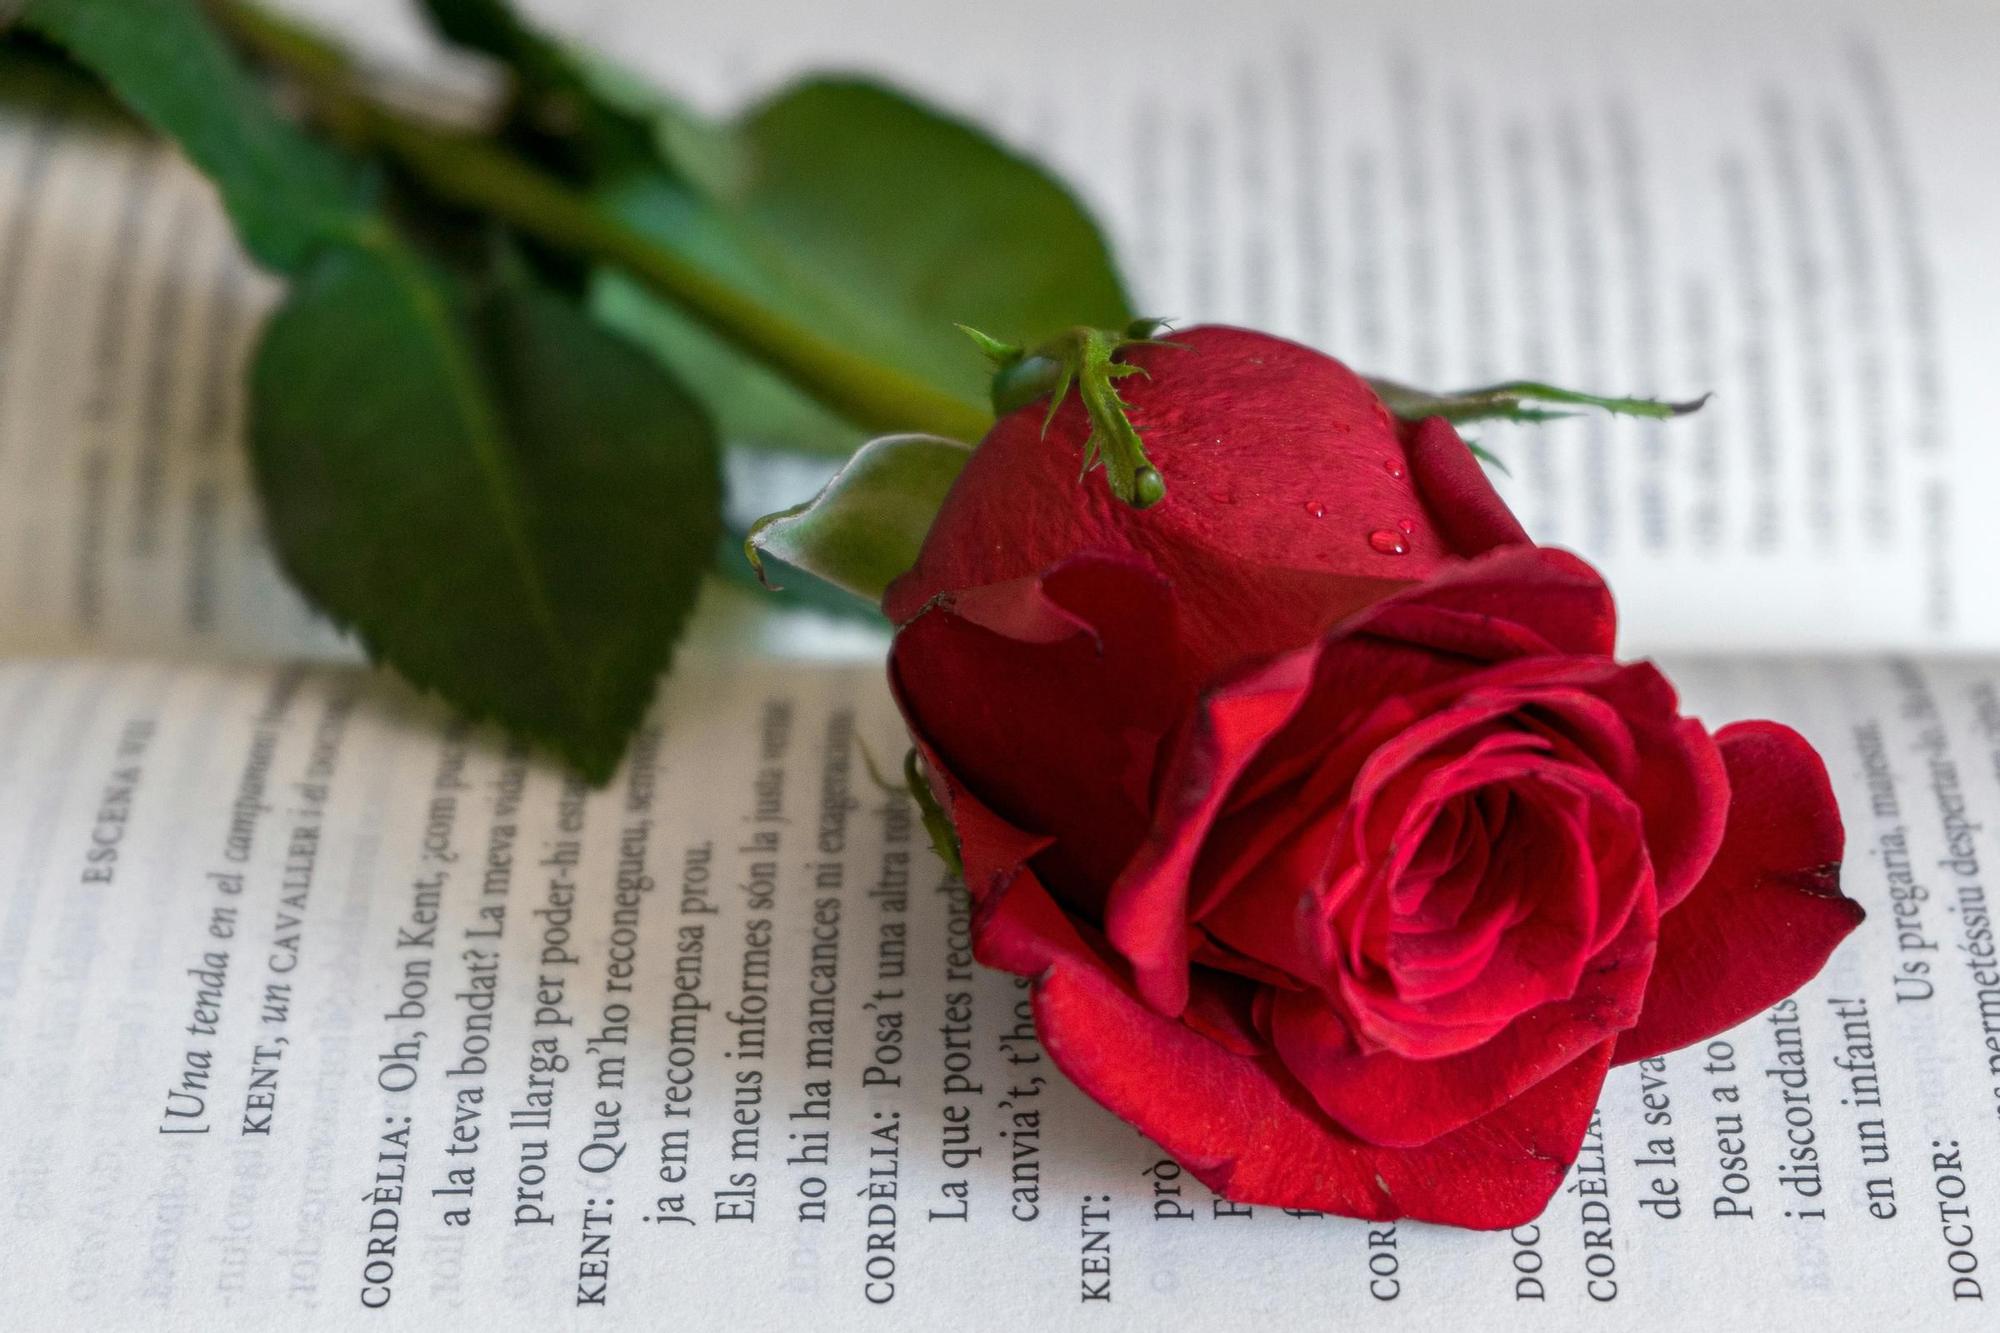 La tradición manda regalar un libro y una rosa cada 23 de abril